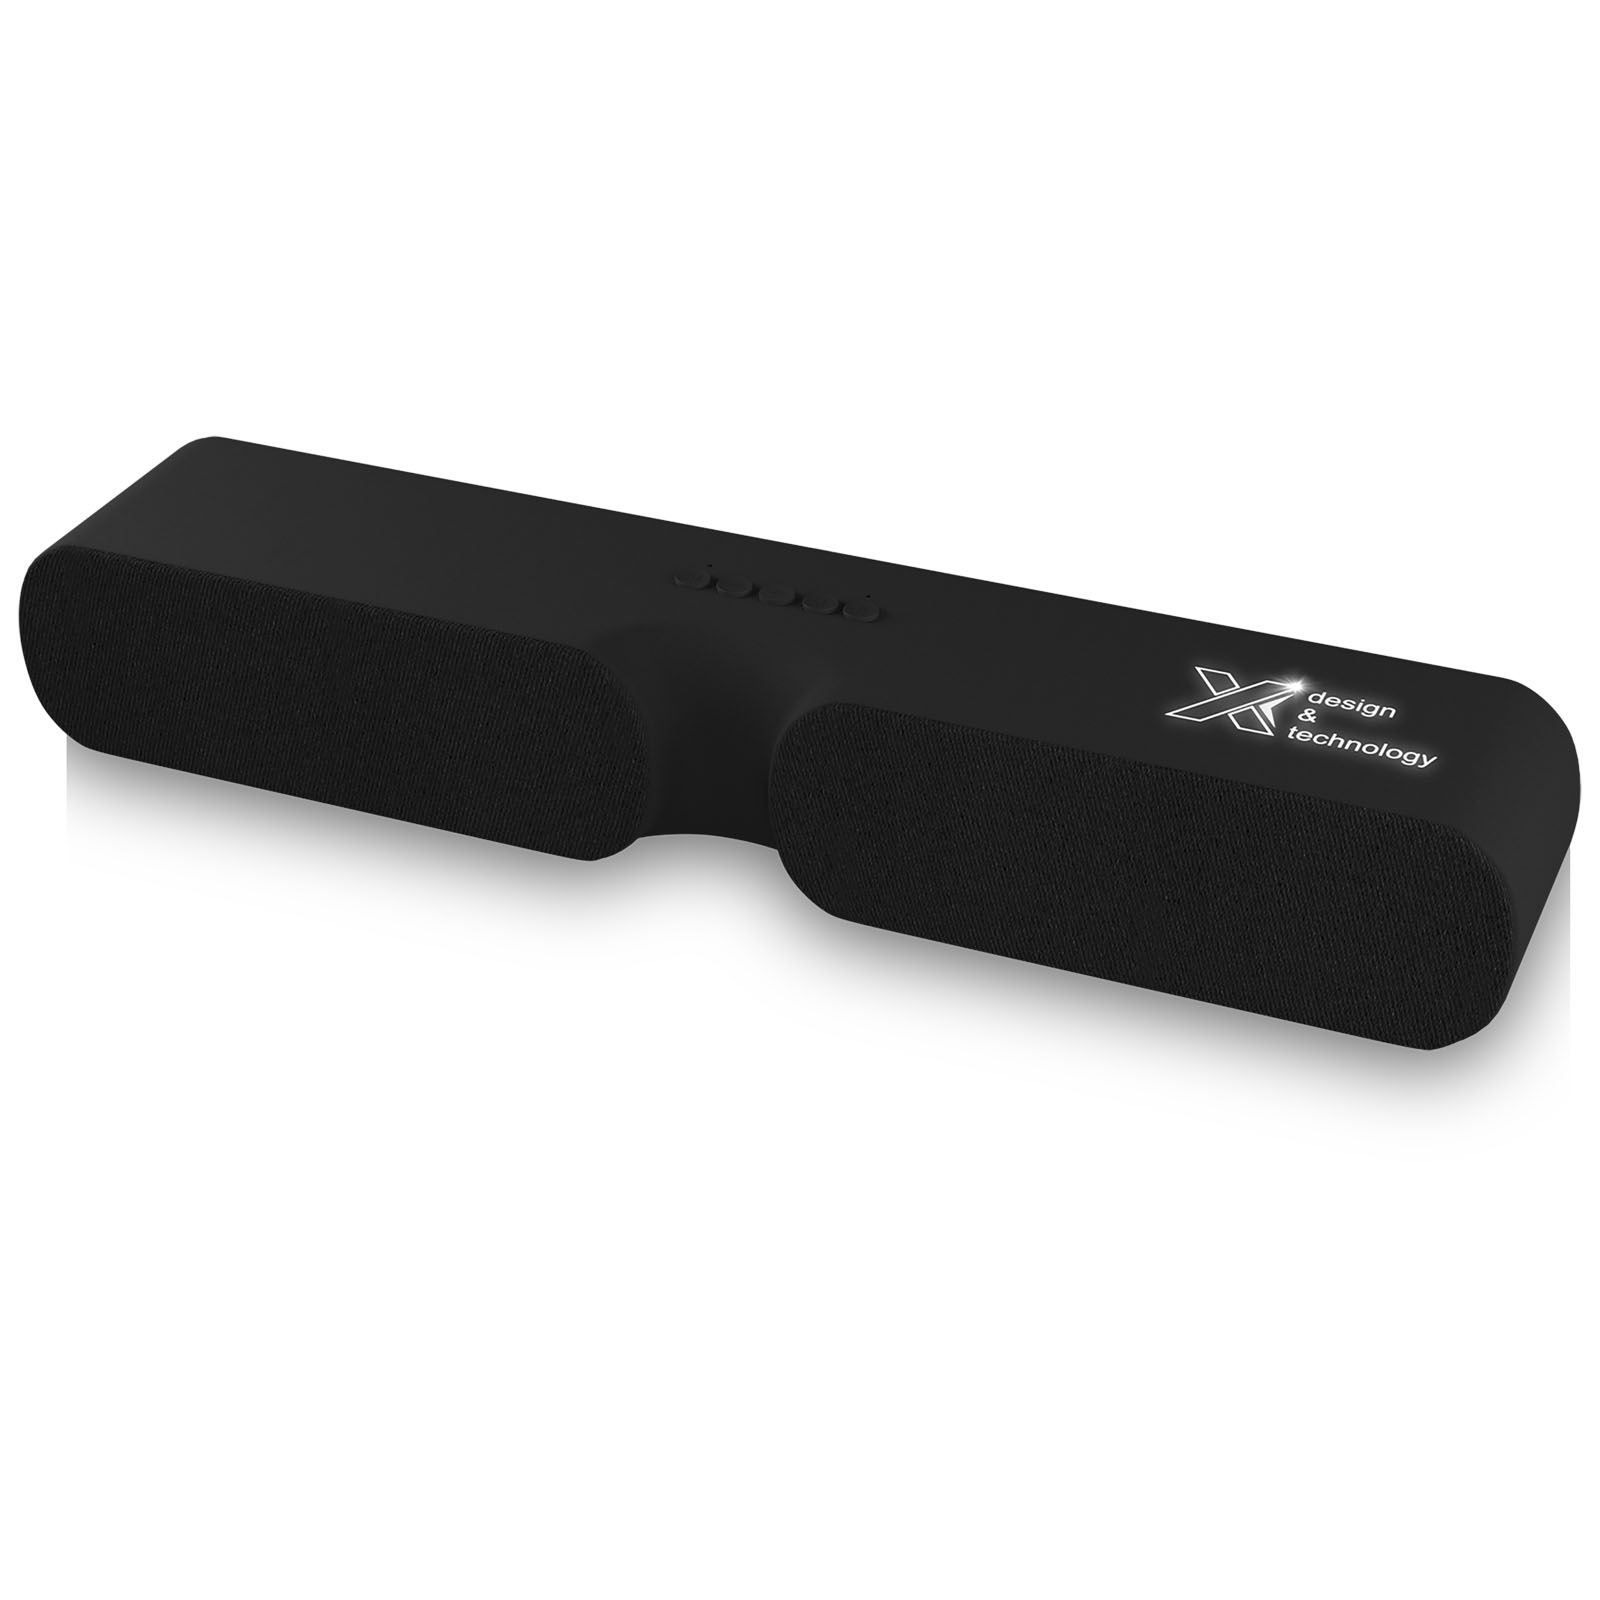 Sound Bar Bluetooth con Luci - Cerveteri